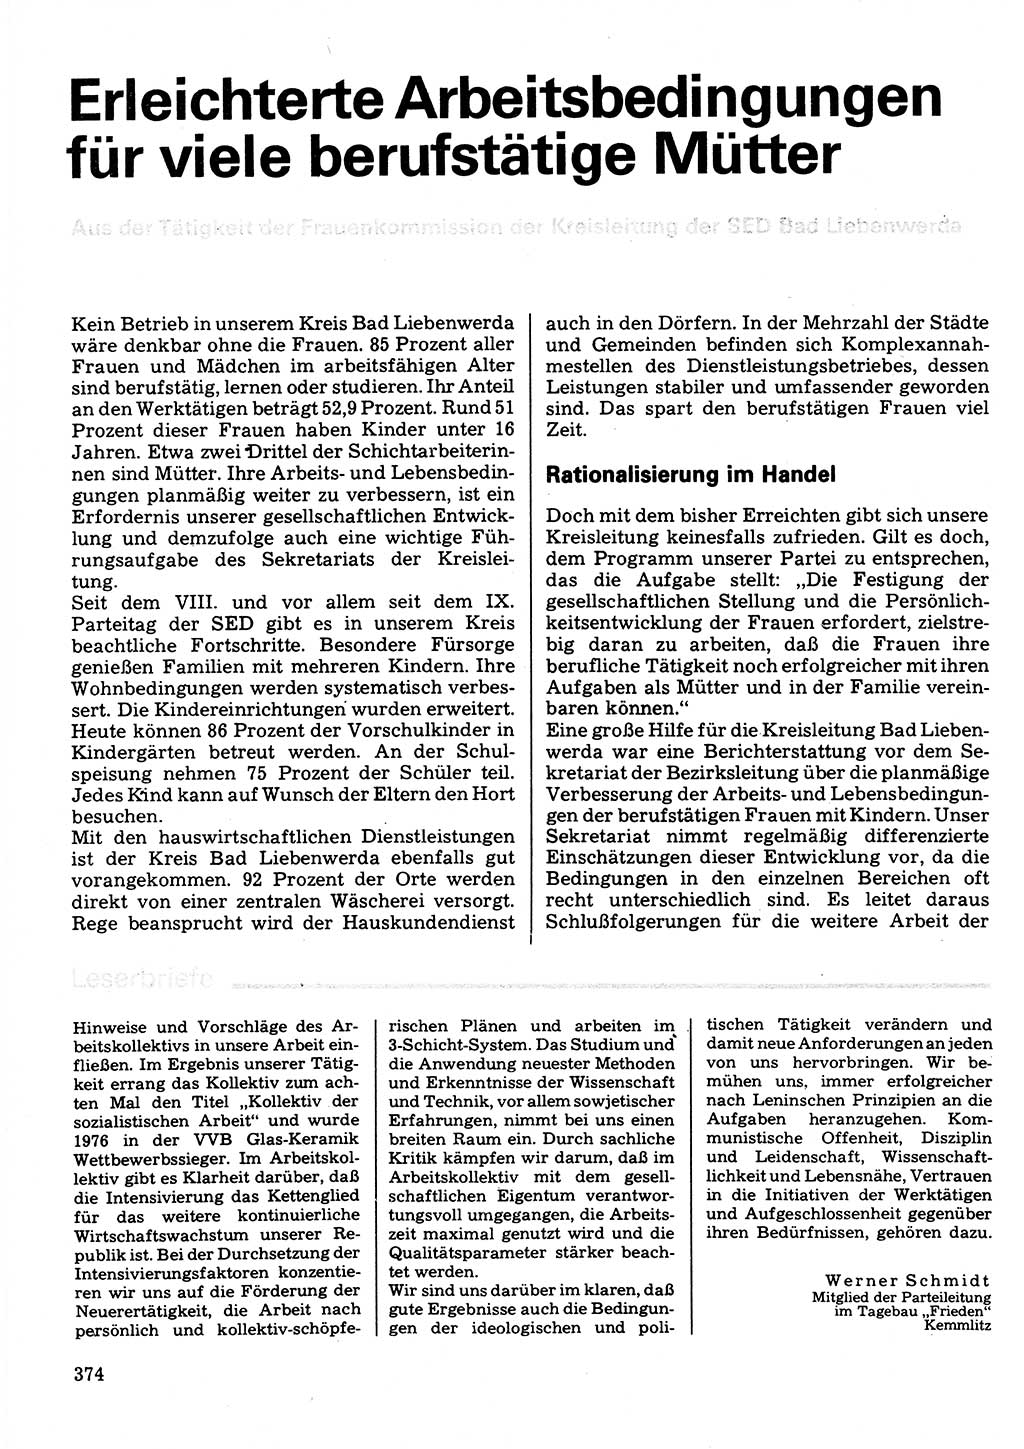 Neuer Weg (NW), Organ des Zentralkomitees (ZK) der SED (Sozialistische Einheitspartei Deutschlands) für Fragen des Parteilebens, 32. Jahrgang [Deutsche Demokratische Republik (DDR)] 1977, Seite 374 (NW ZK SED DDR 1977, S. 374)